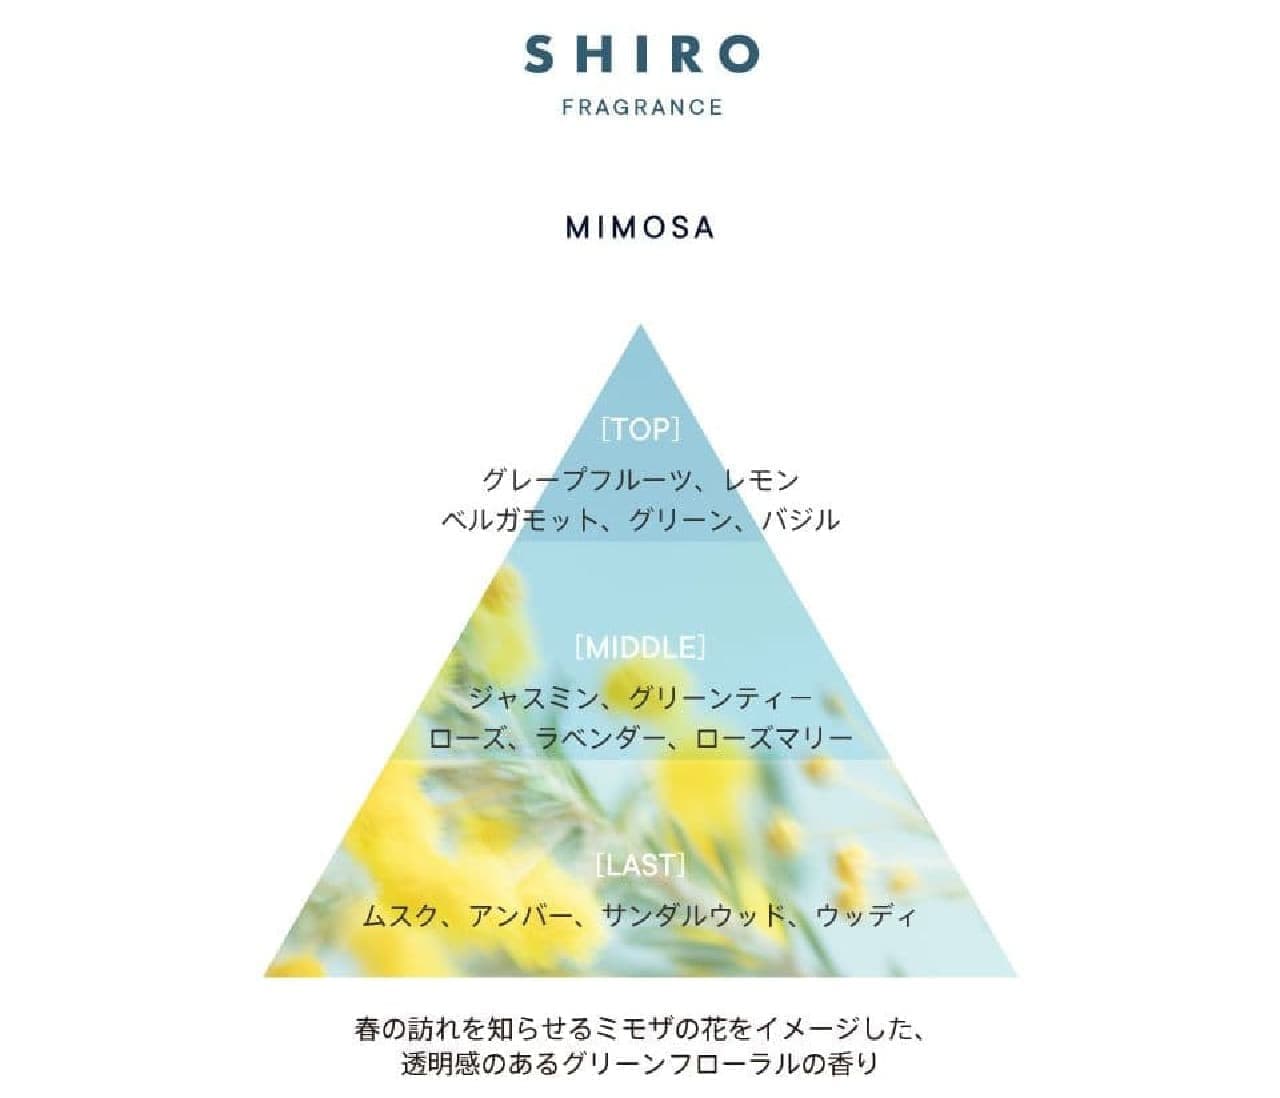 SHIRO 限定フレグランス “ミモザ” グリーンフローラルの香り！オード 